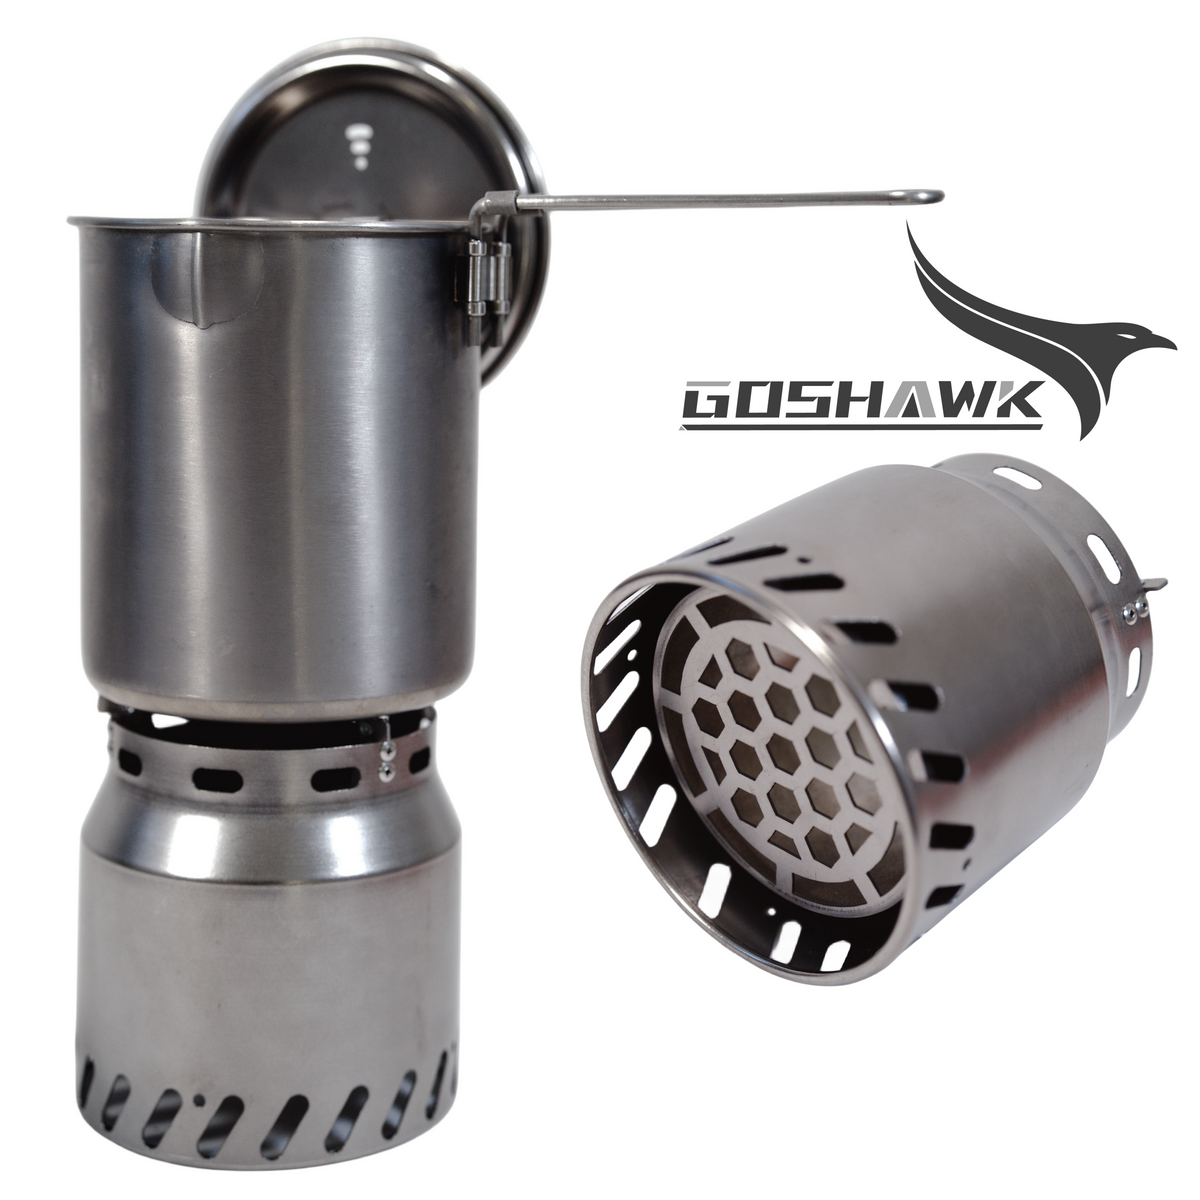 Goshawk Titanium Wood Gas Stove Multi-fuel Burner Cooking System 